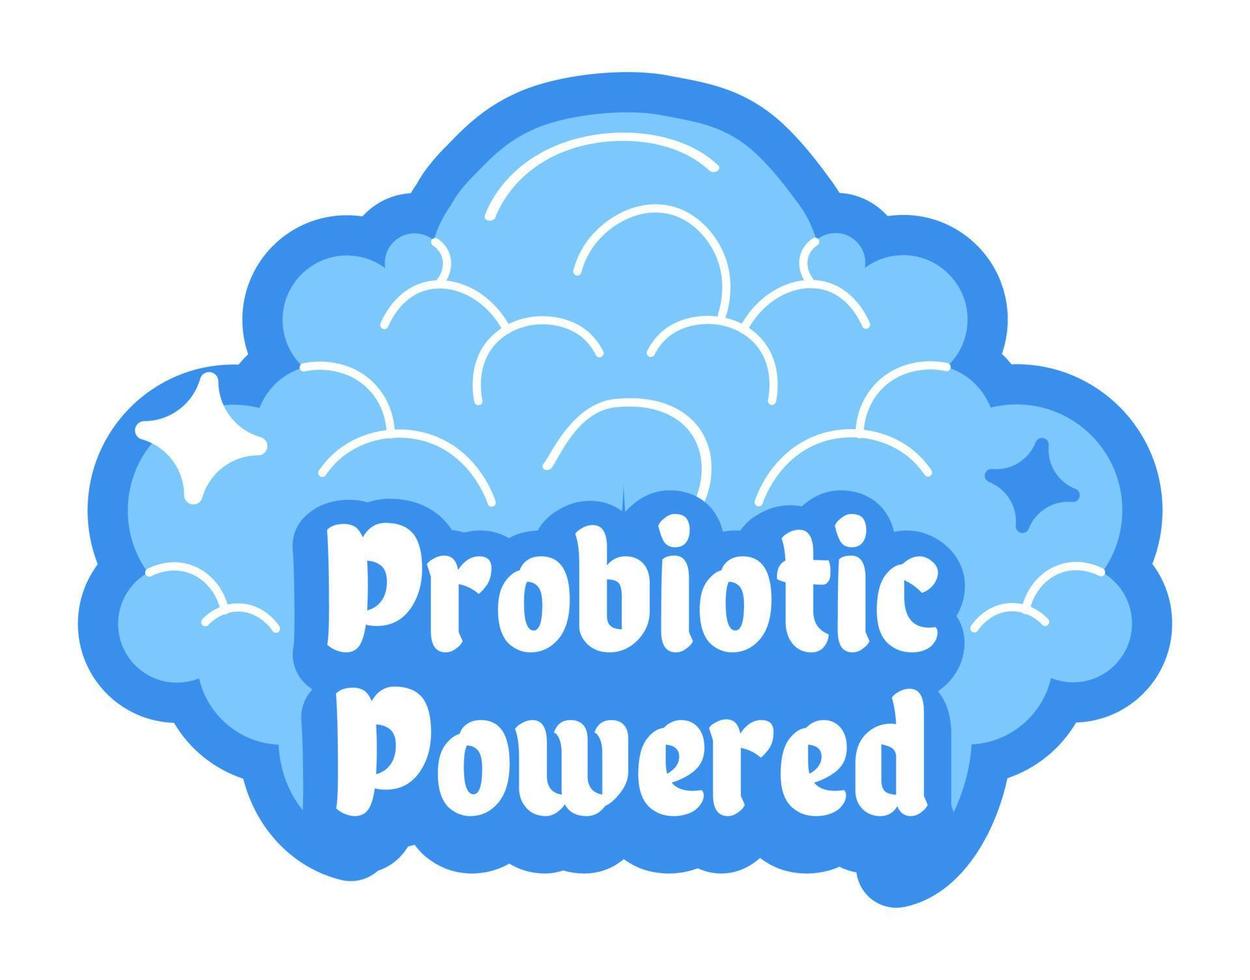 nettoyage probiotique, vecteur de service de nettoyage